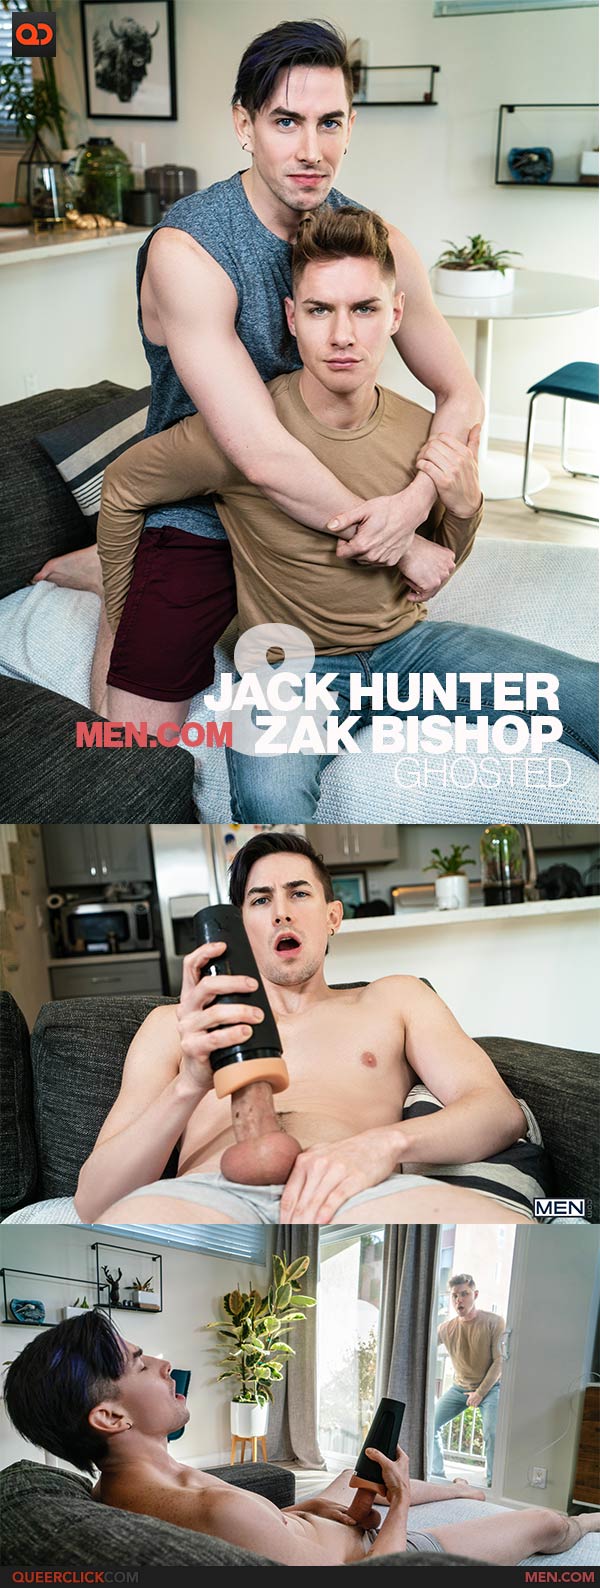 Men.com: Jack Hunter and Zak Bishop